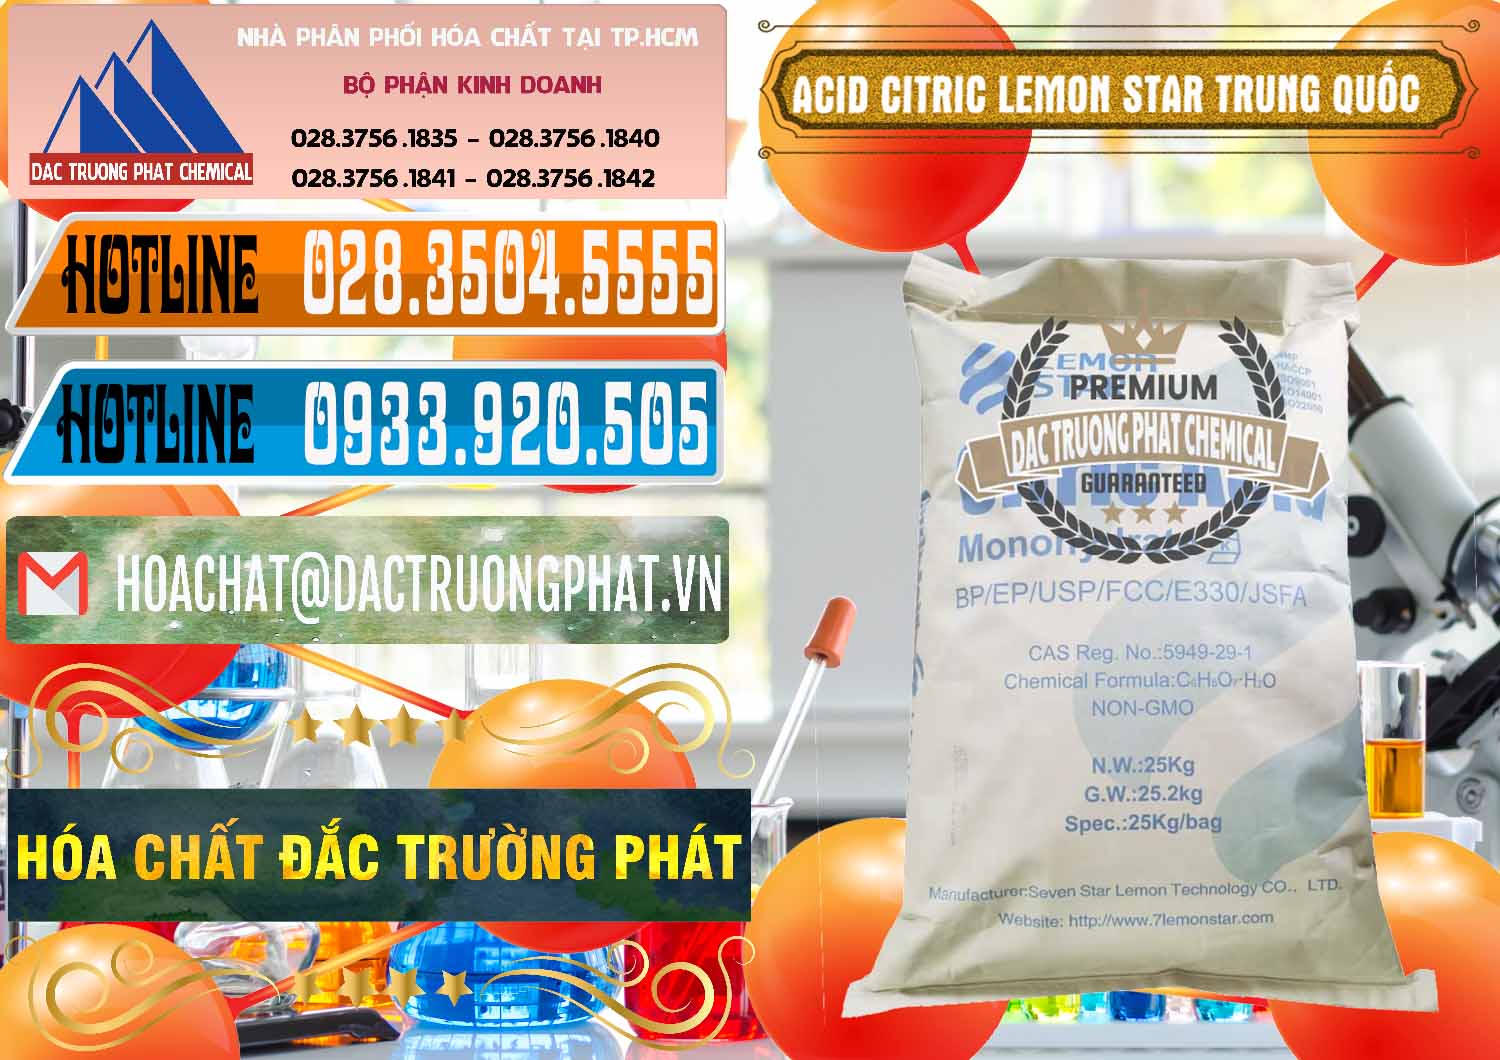 Cty bán _ cung ứng Acid Citric - Axit Citric BP/EP/USP/FCC/E330 Lemon Star Trung Quốc China - 0286 - Nhà phân phối & kinh doanh hóa chất tại TP.HCM - stmp.net